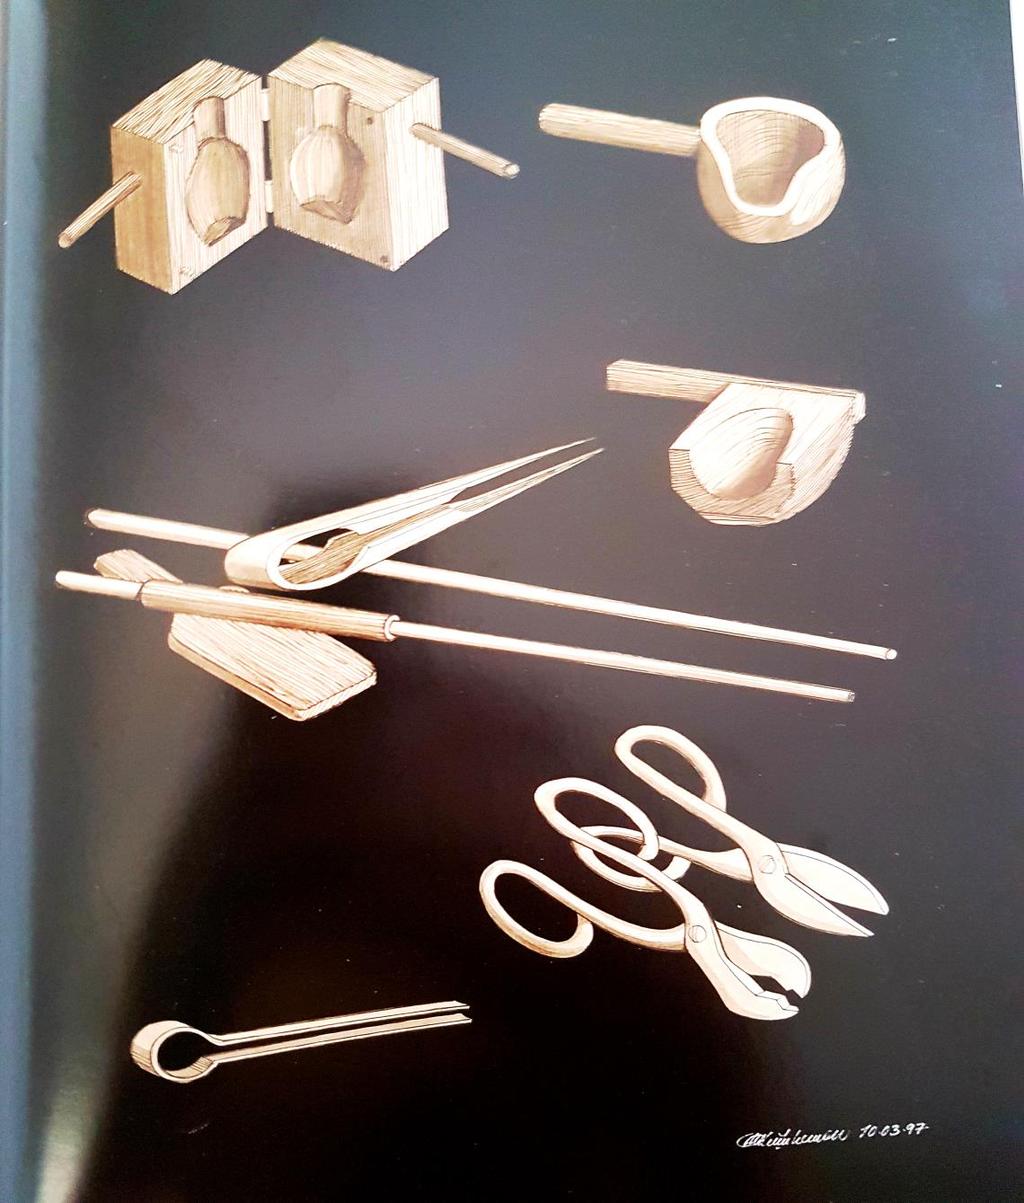 Resim 3.6. Beykoz işi cam kimliğini taşıyan ürünlerin yapıldığı yıllarda kullanılan geleneksel camcılık aletleri (Küçükerman, 2002, s. 119